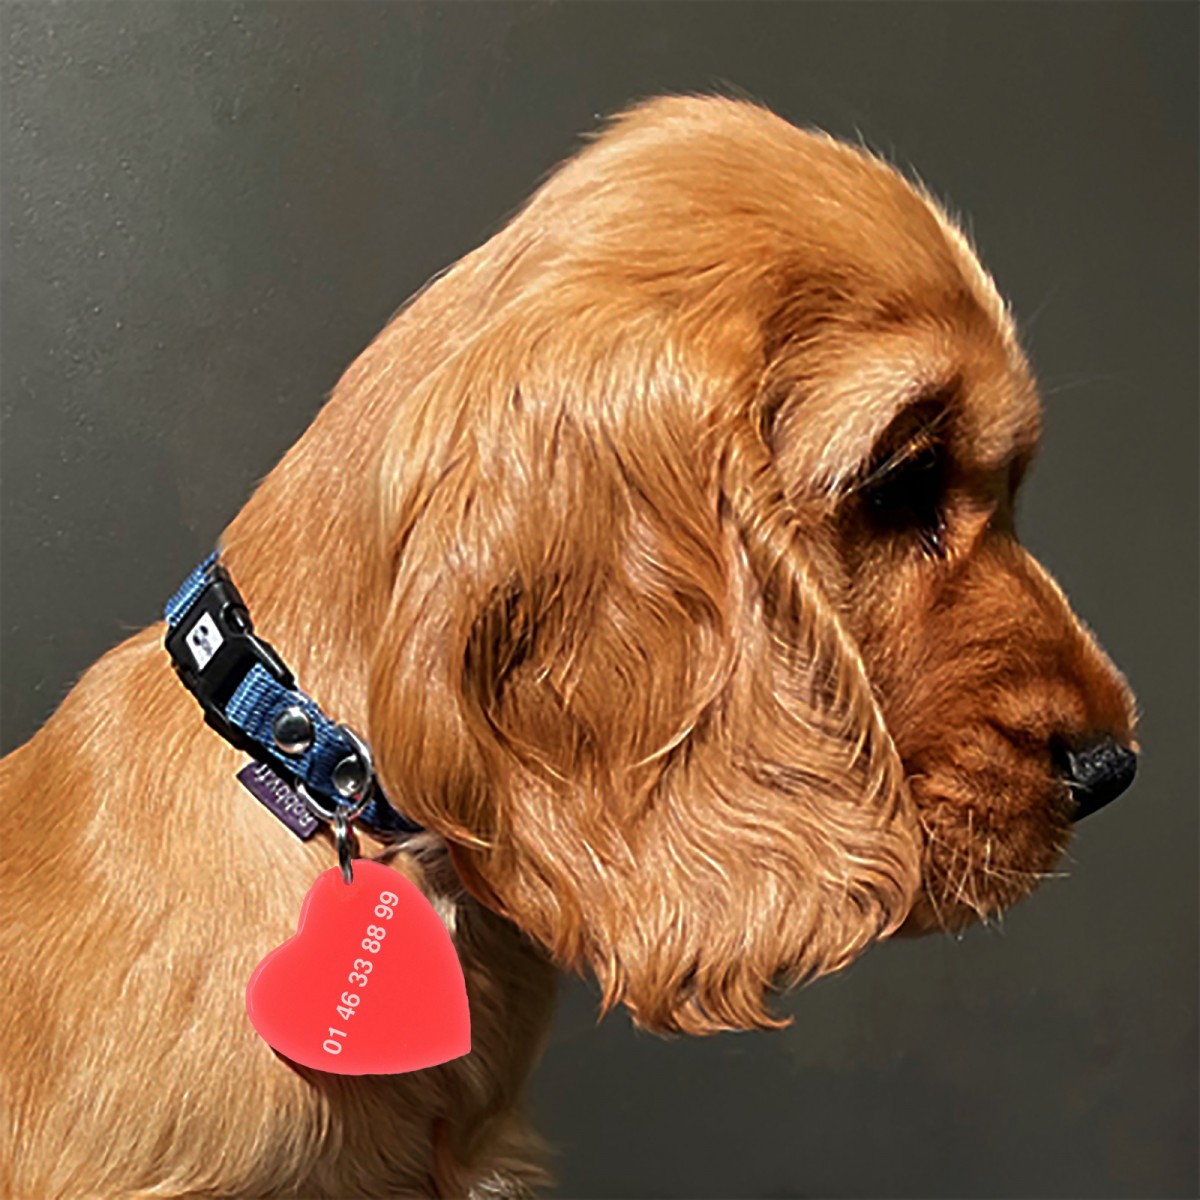 COEUR DE CHIEN - Médaillon pour chien fabriqué à la main par l'atelier Hervé Domar